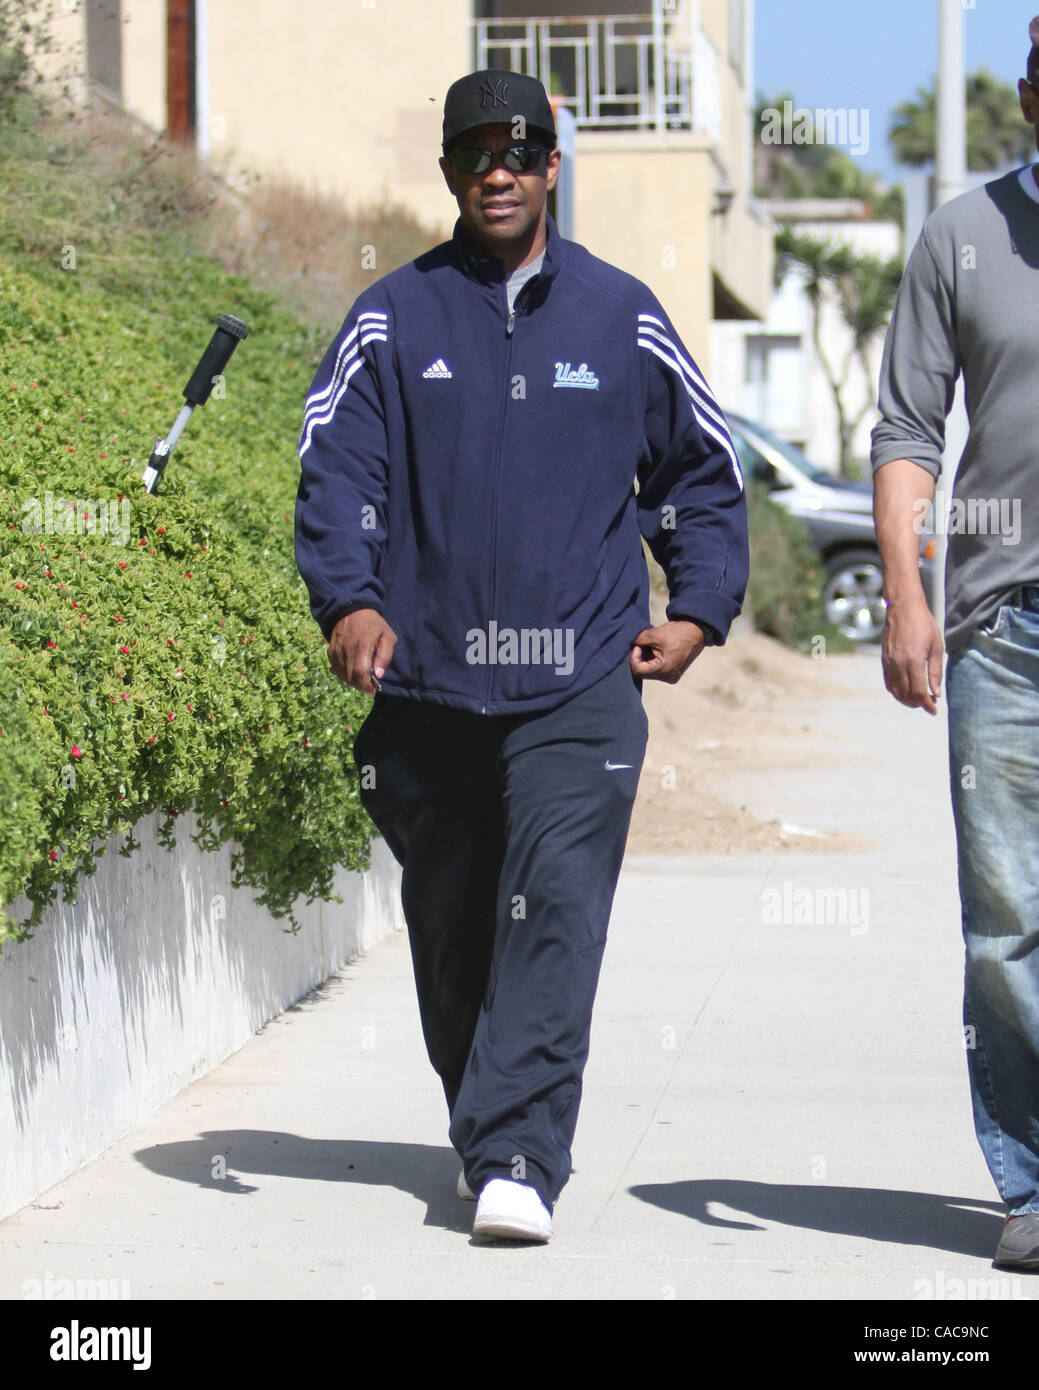 07 Aug, 2010 - Malibu, California, EE.UU. - El actor Denzel Washington  vistos en Malibu visten casual, vistiendo un chándal Adidas y sombrero de los  Yankees de Nueva York. (Crédito de la